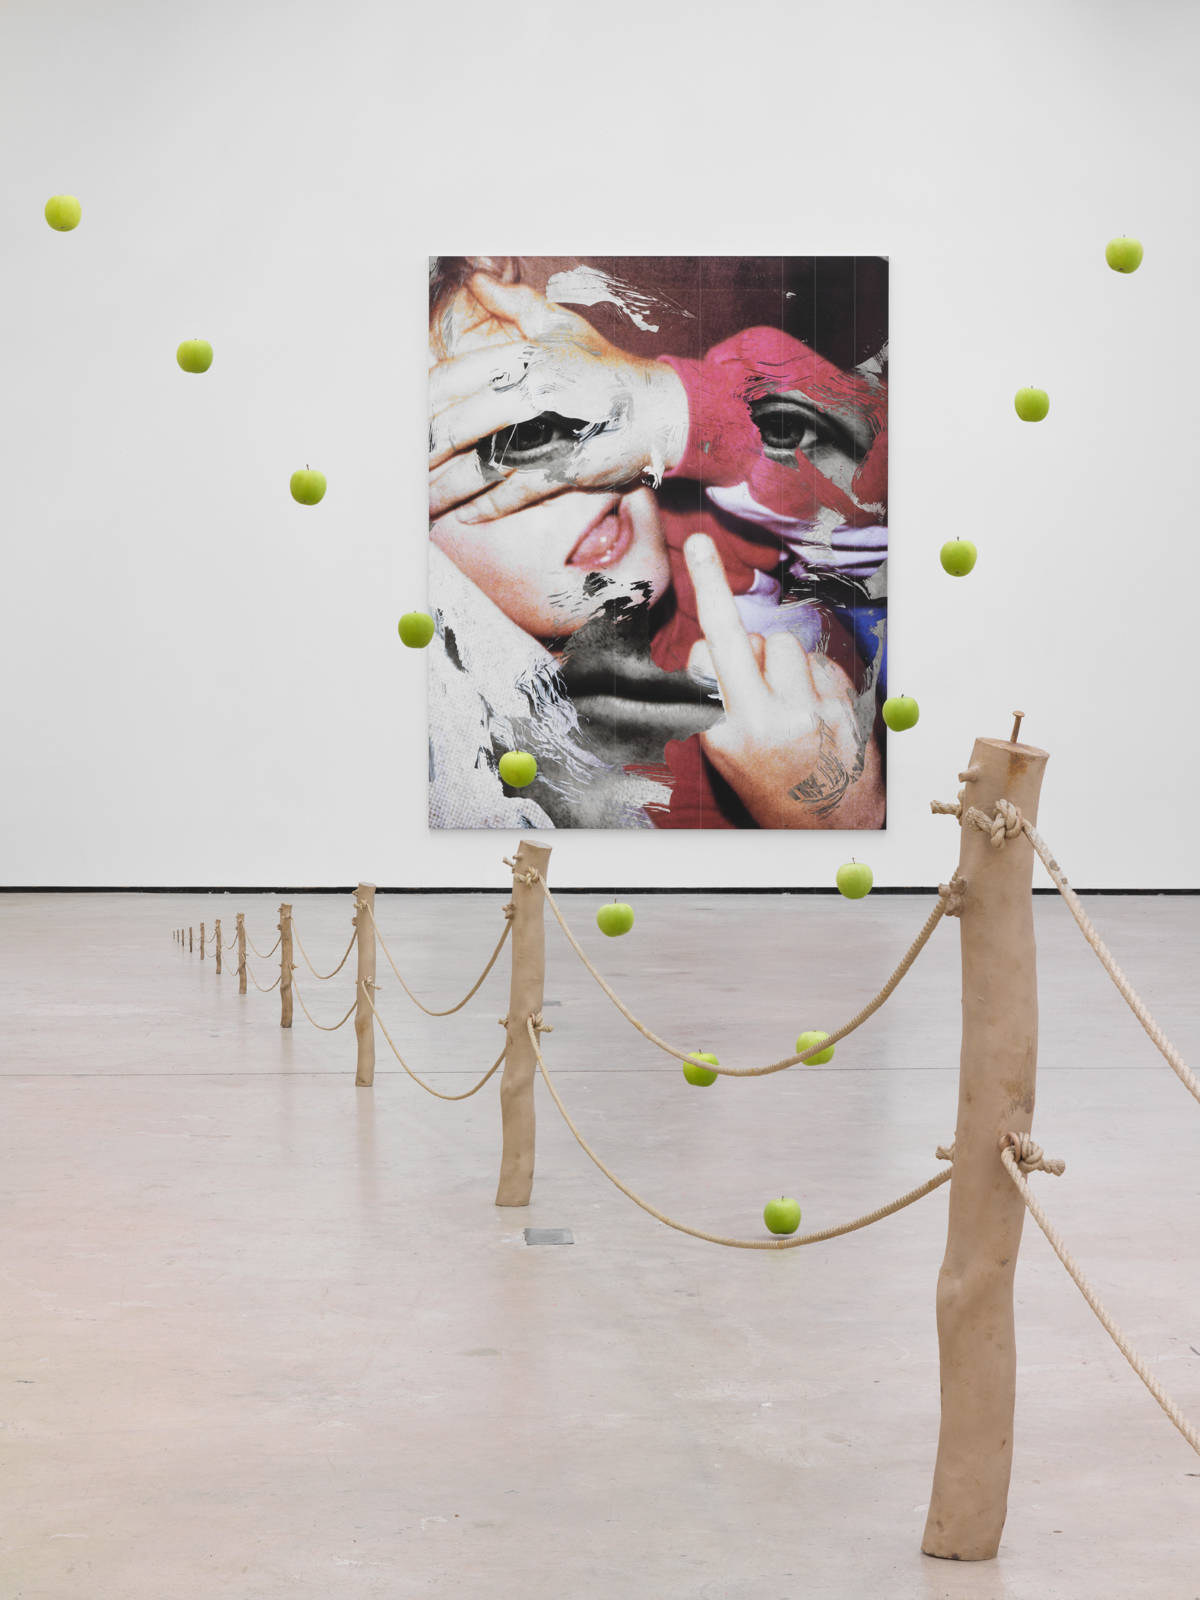 Urs Fischer / "∞", exhibition view, The Modern Institute, Glasgow / 2015